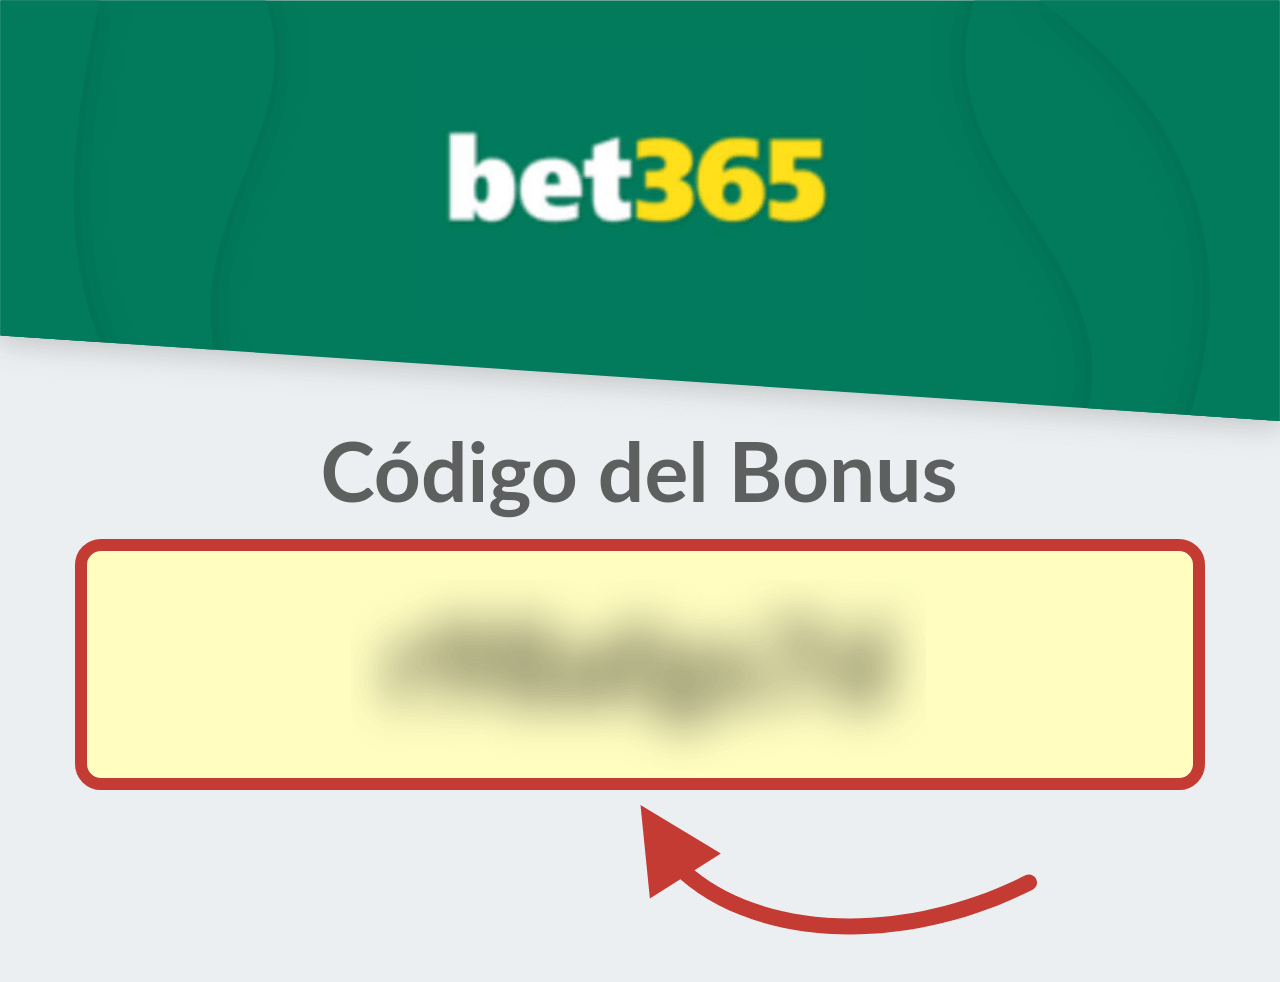 Código del bono bet365 Paraguay